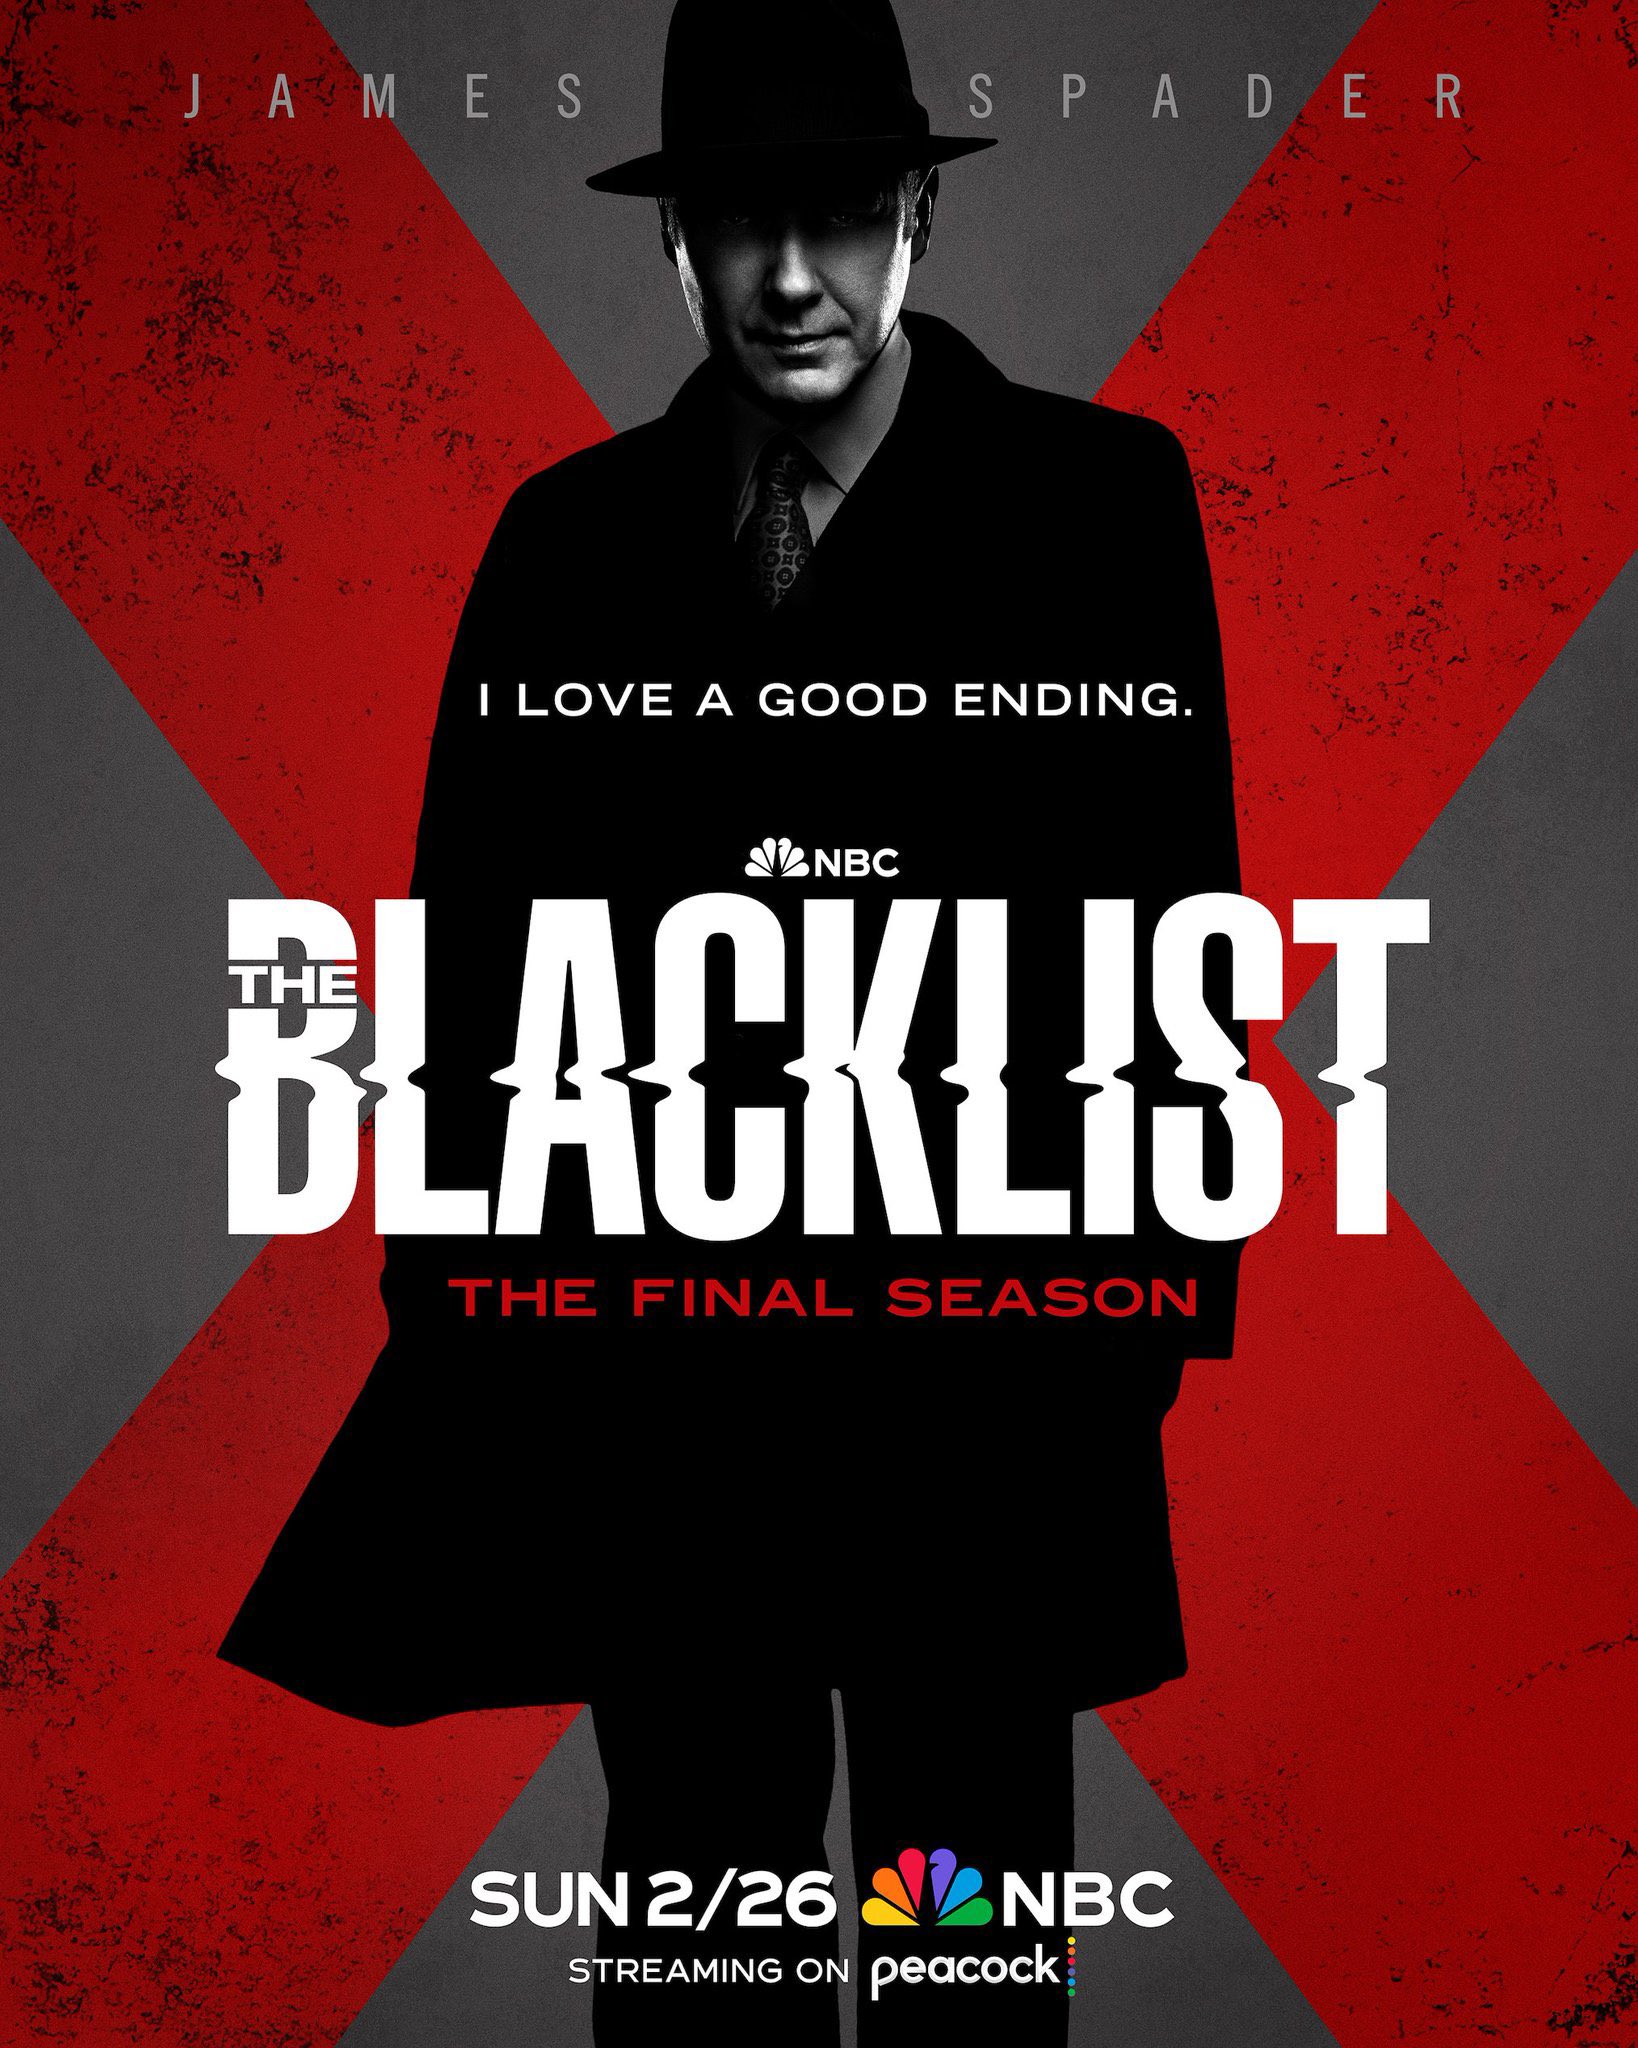 James Spader in The Blacklist | Promotional poster